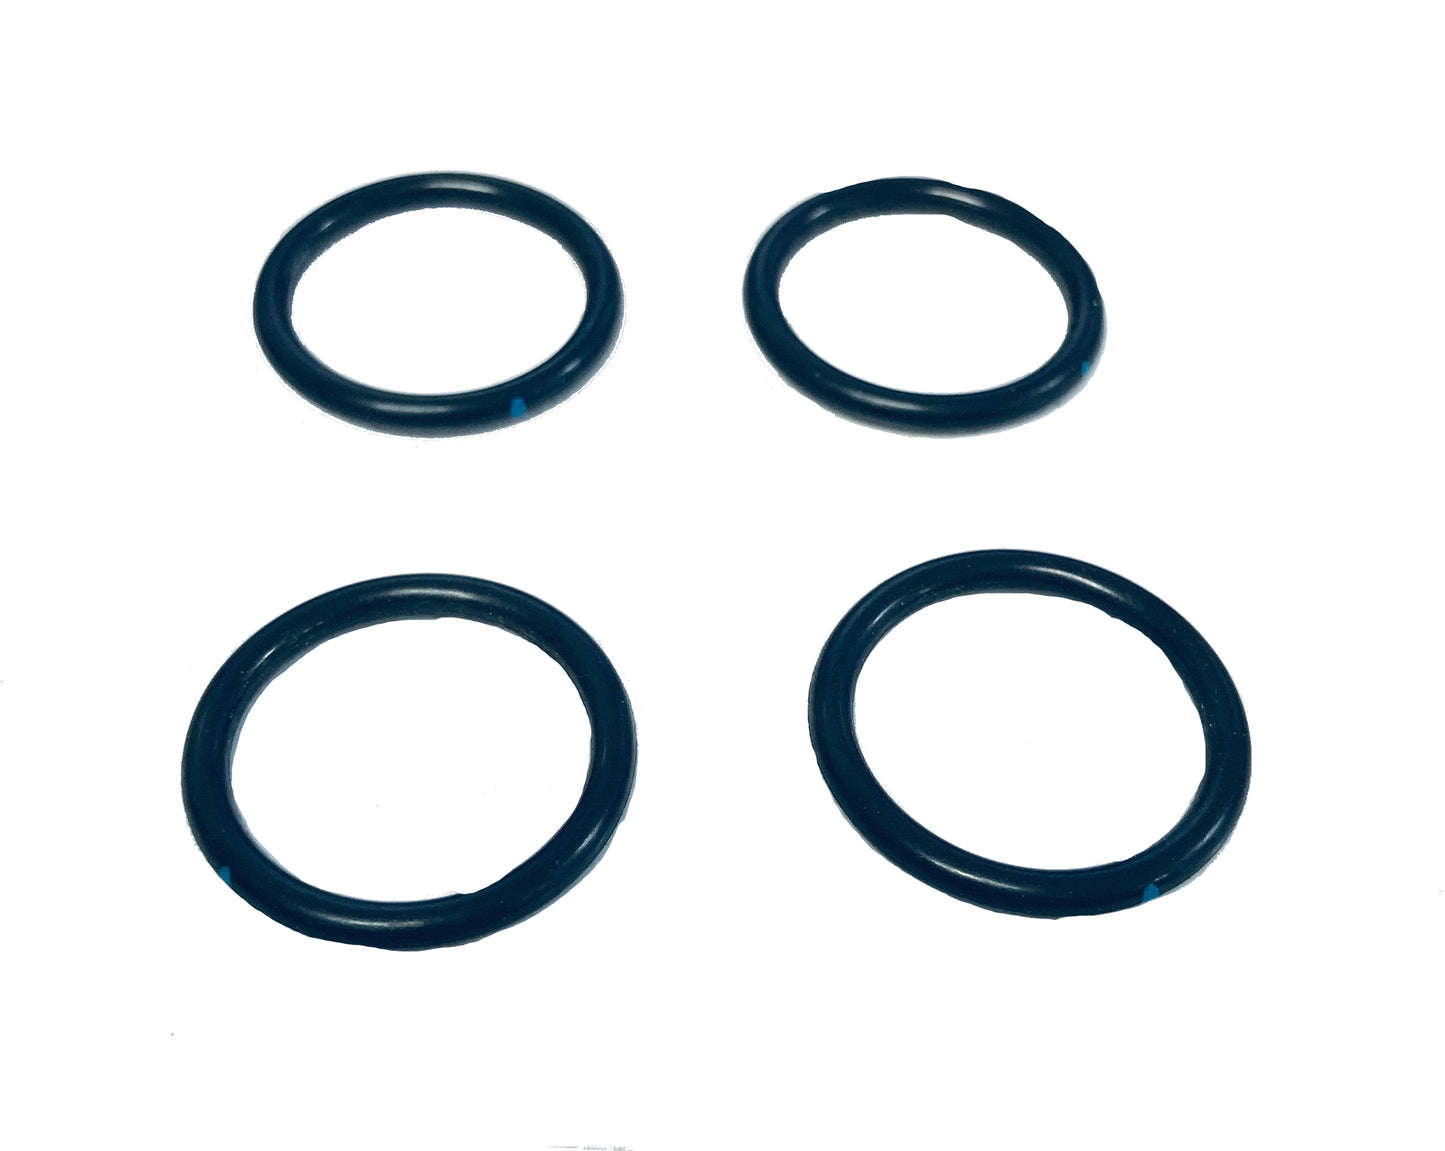 John Deere Original Equipment O-Ring (Pack of 4) - R26906,4